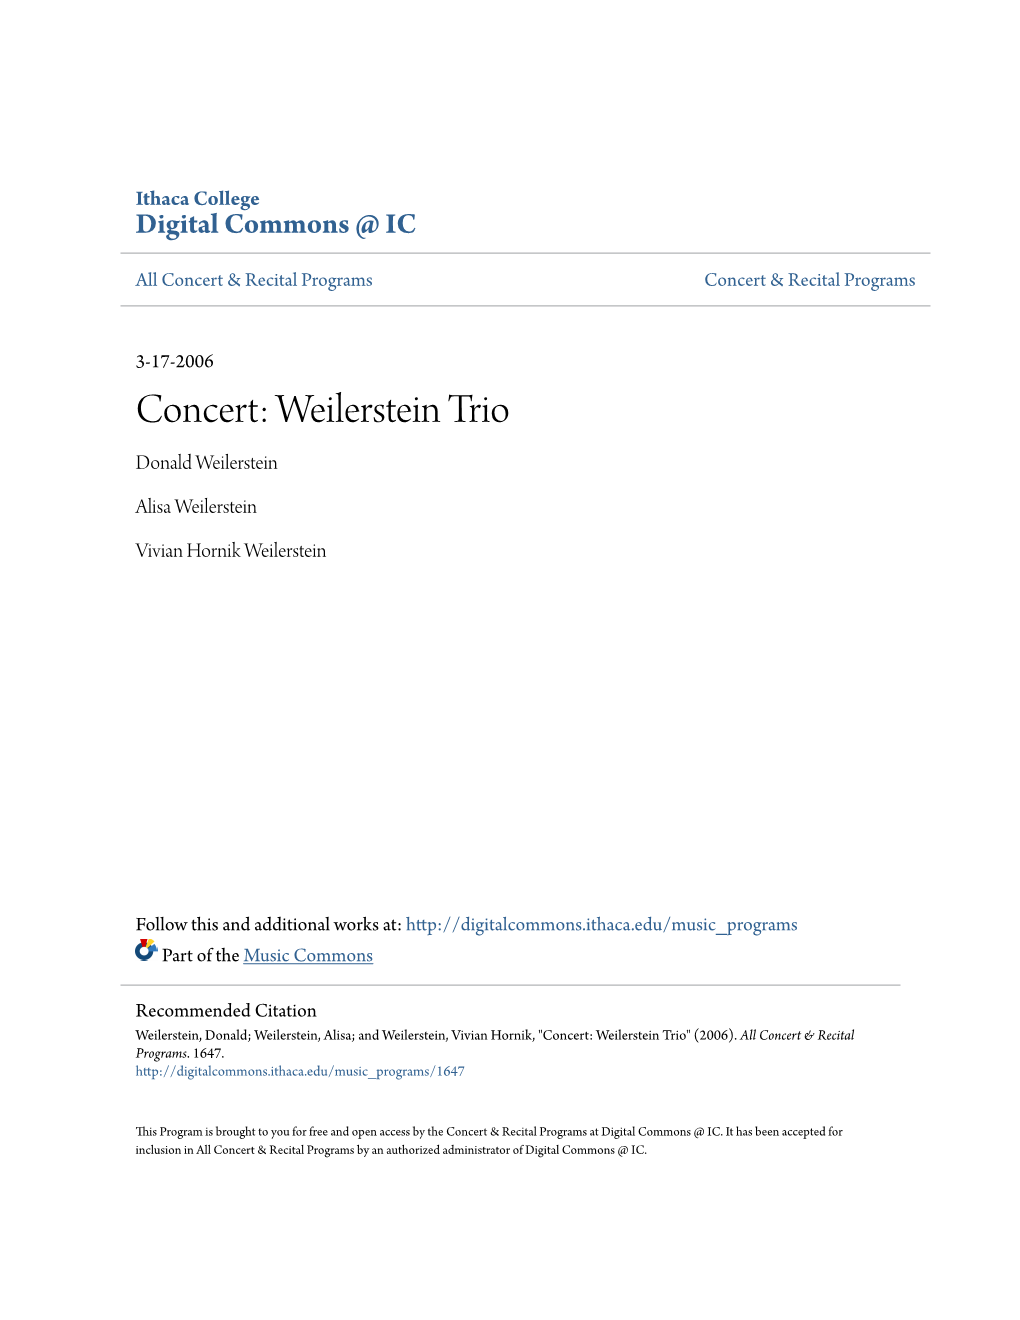 Concert: Weilerstein Trio Donald Weilerstein